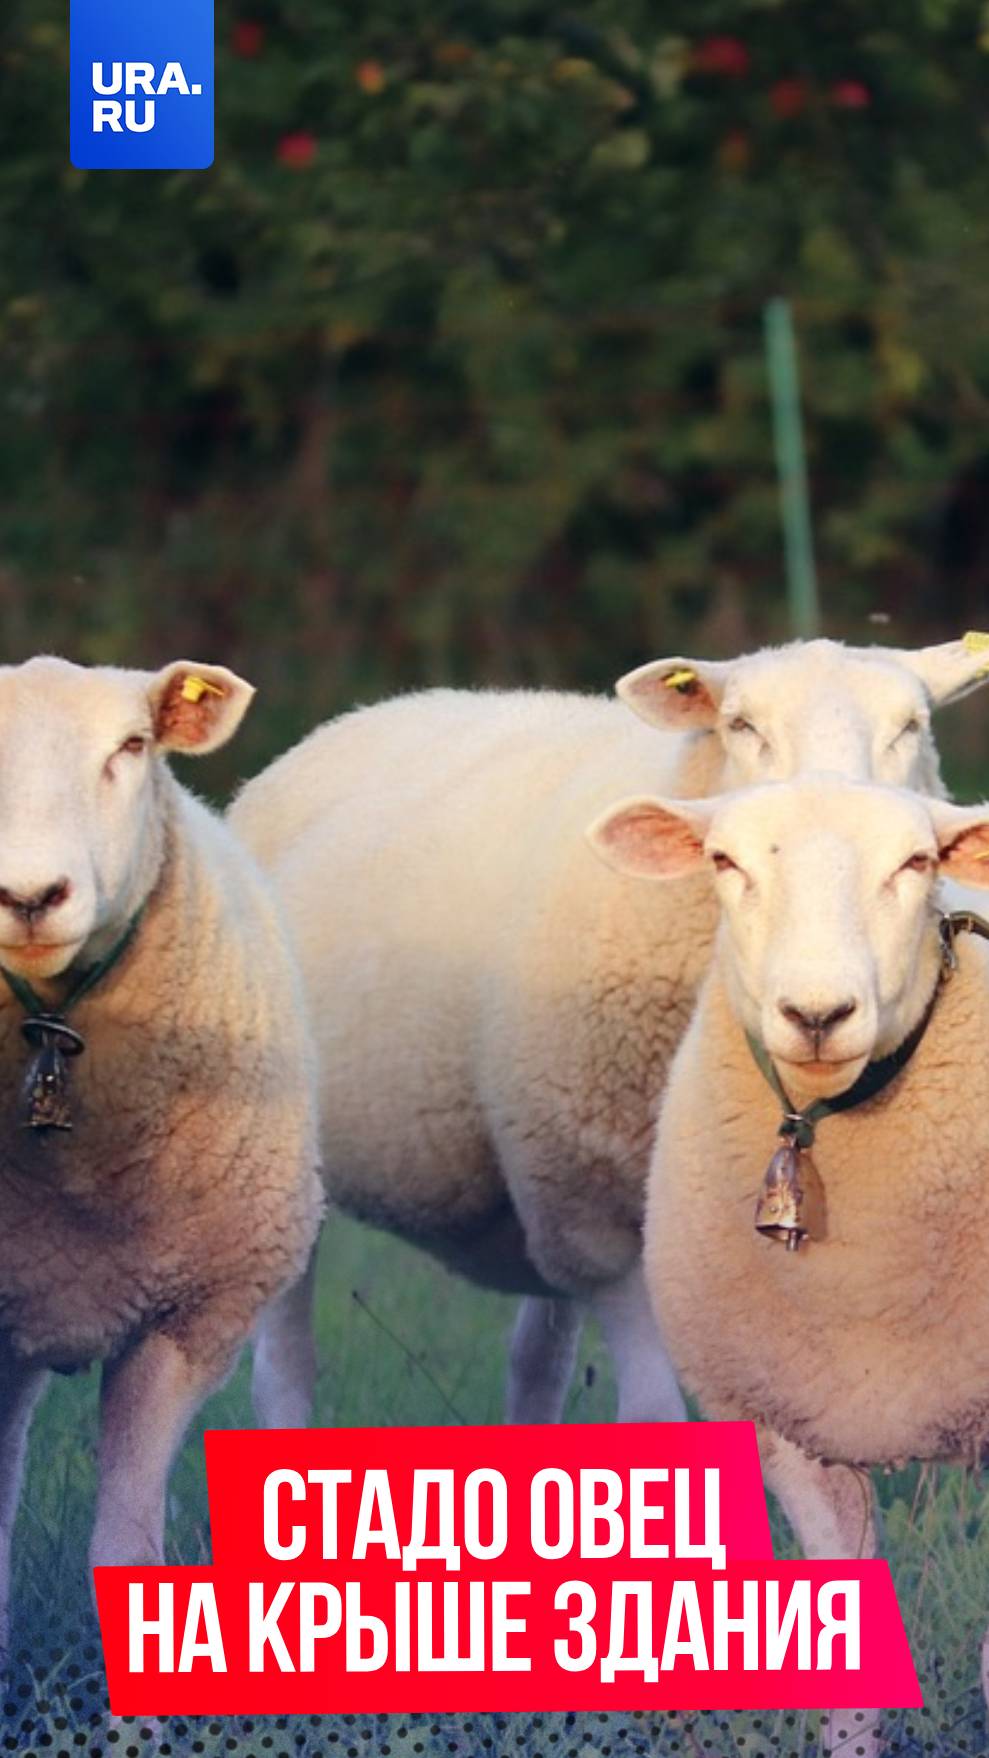 В Омской области стадо овец забралось на крышу сеновала